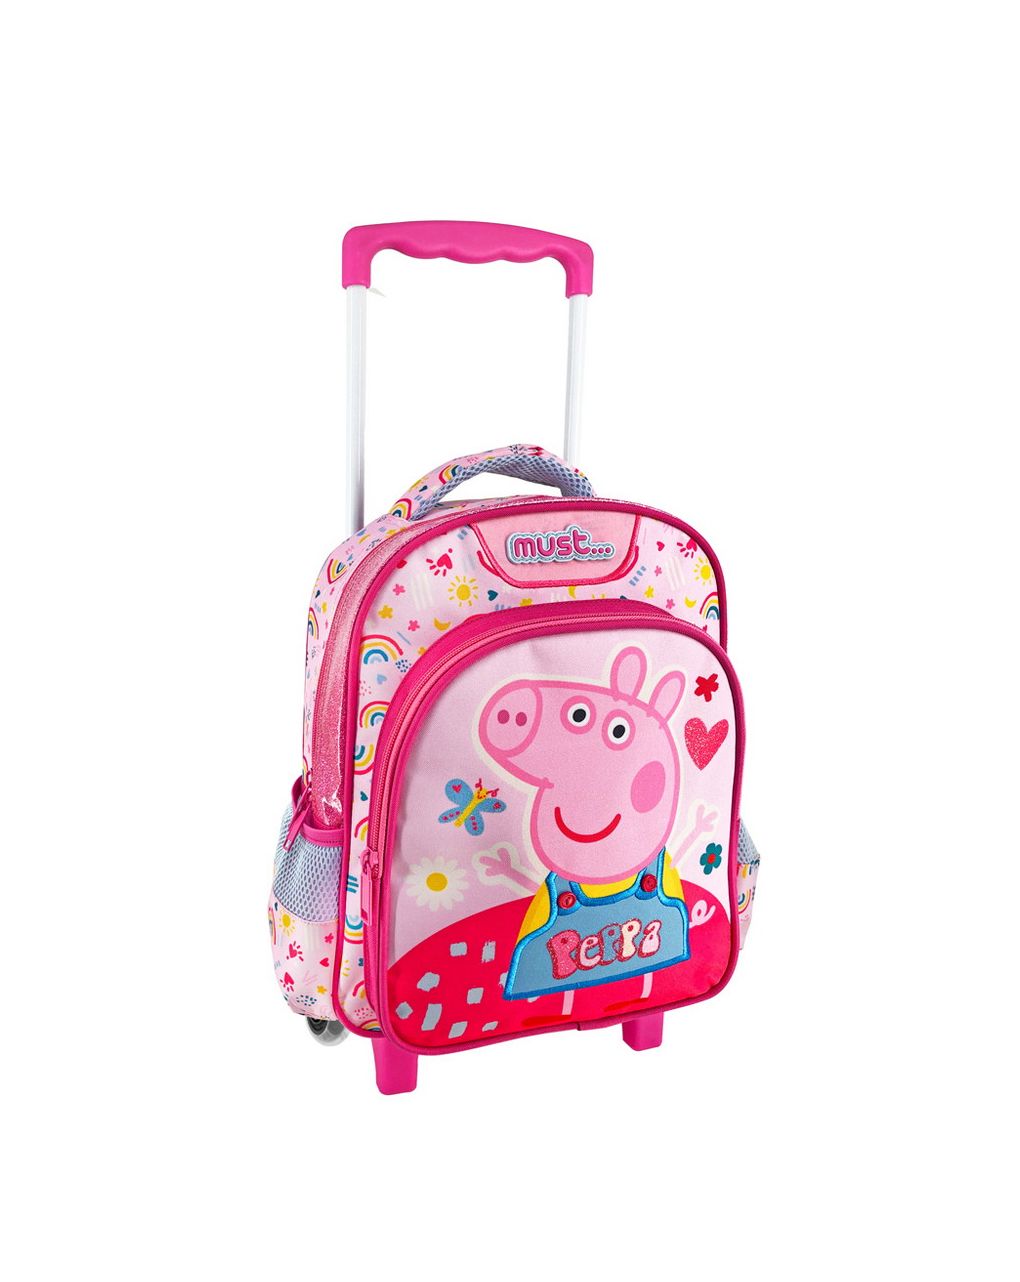 σχολική τσάντα τρόλεϊ νηπίου peppa pig must 2 θήκες  000482741 - must